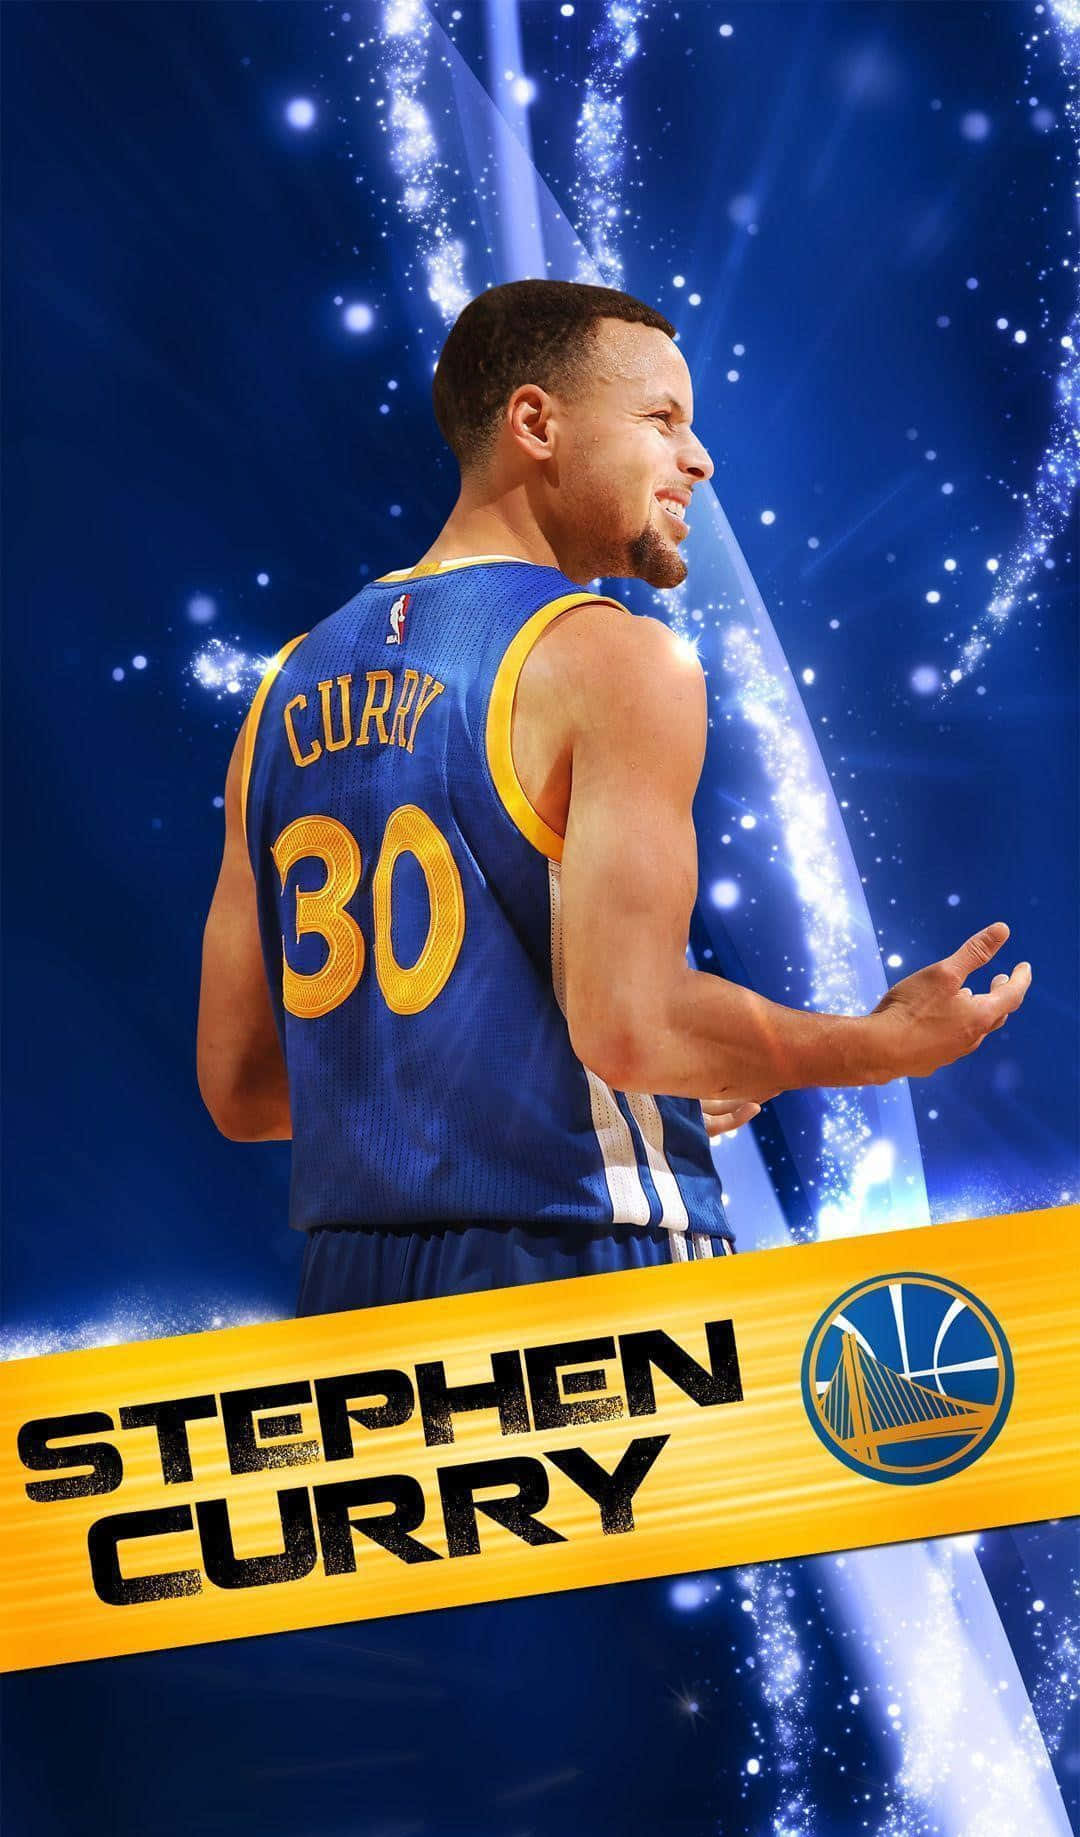 Stephen Curry Warriors Basketball Star Wallpaper